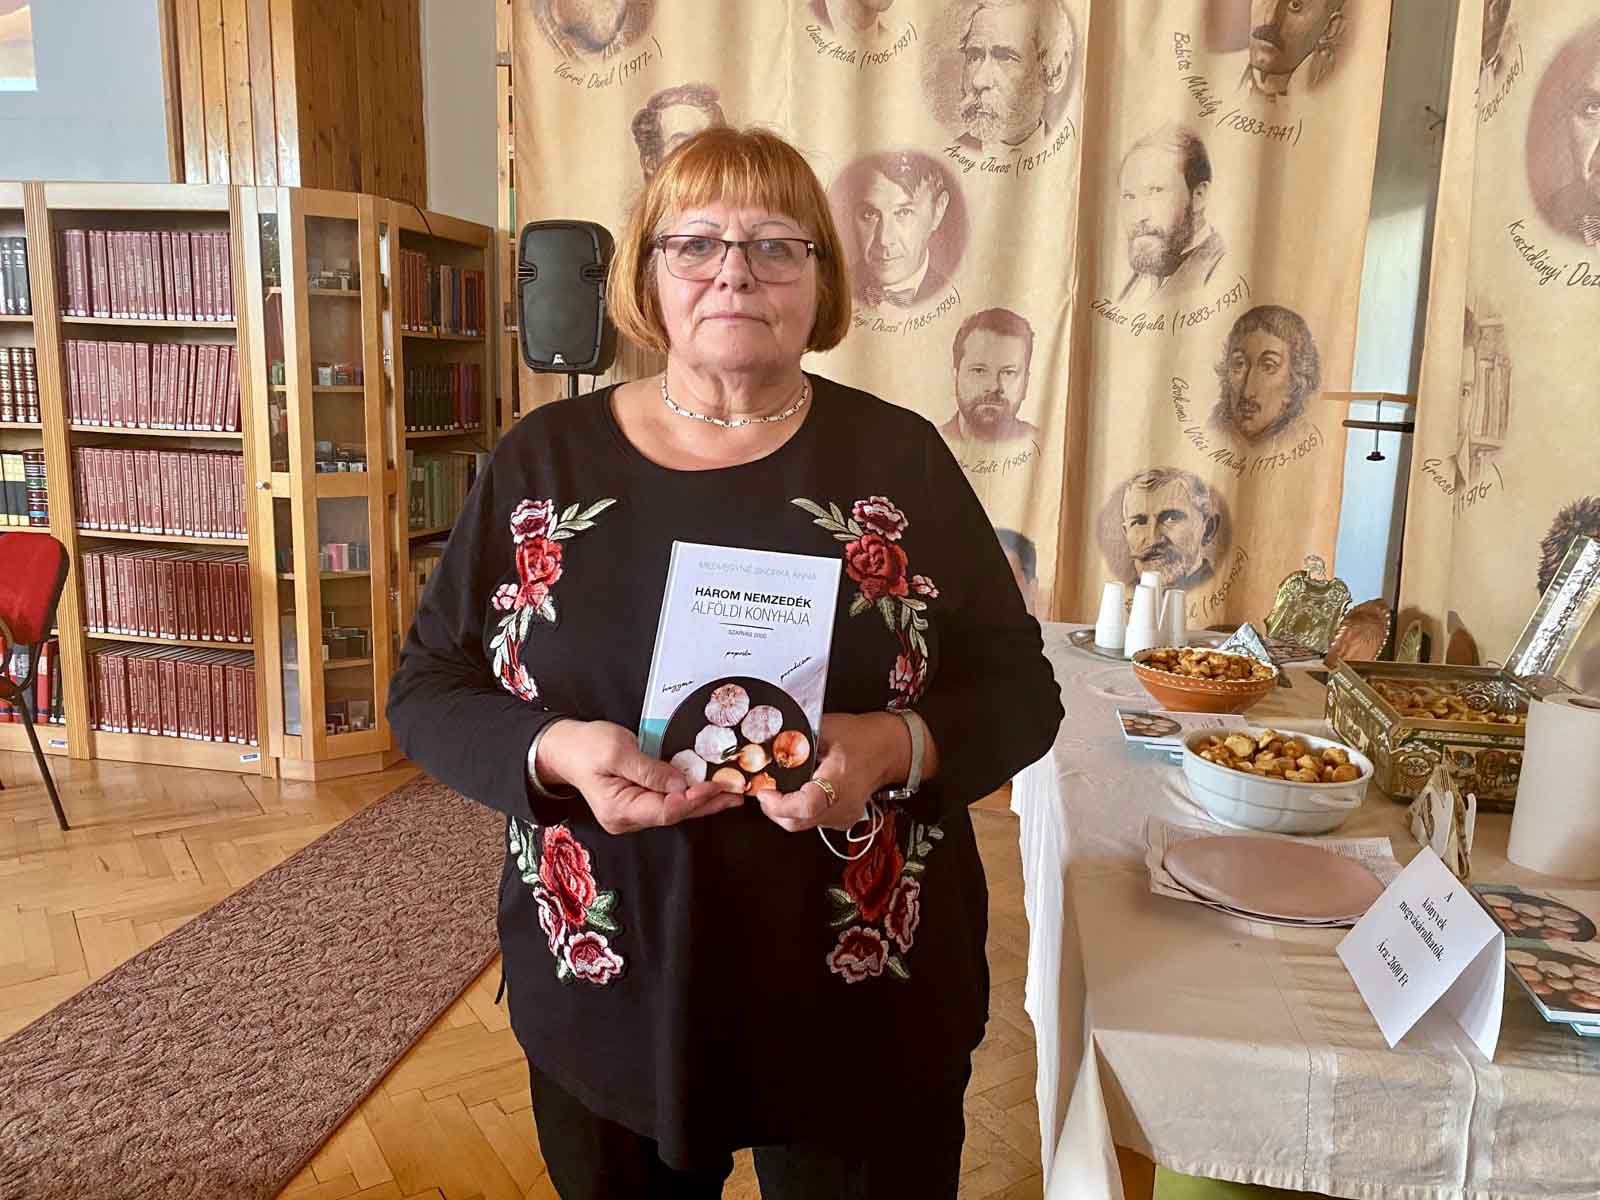 Medvegyné Skorka Anna és Három nemzedék alföldi konyhája című könyve (Fotó: S-L.I.)